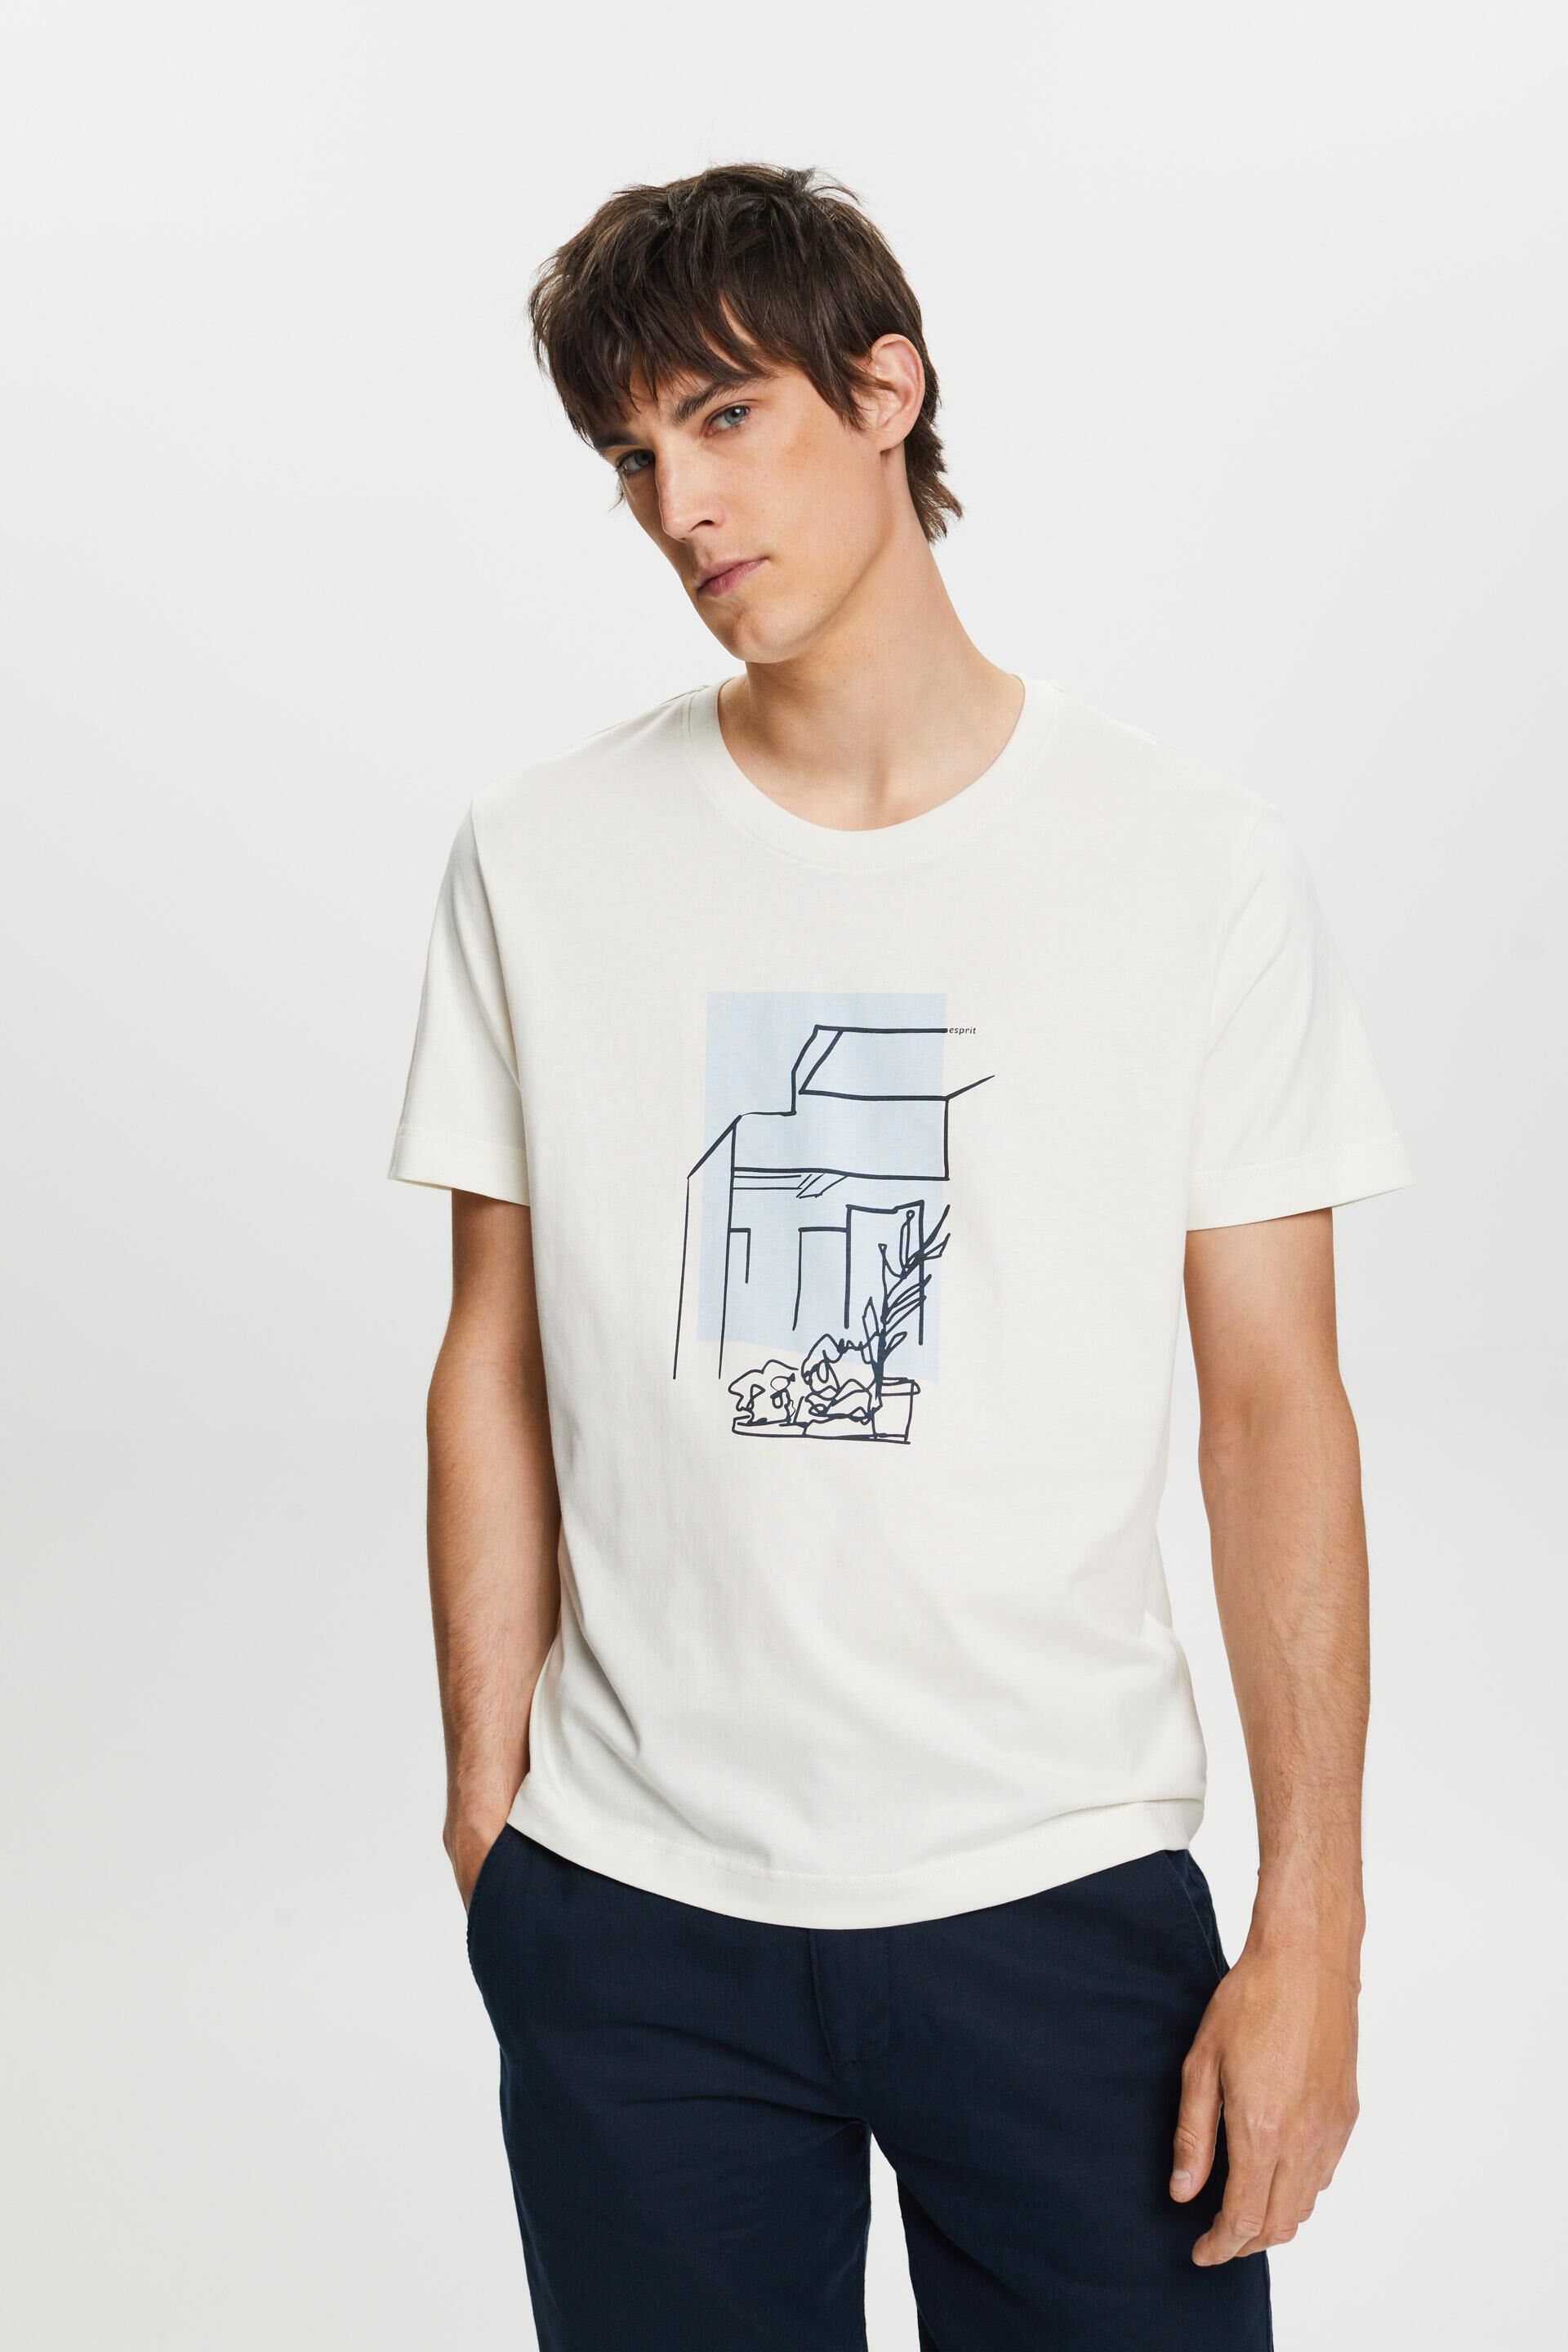 Esprit front cotton with T-shirt 100% print,